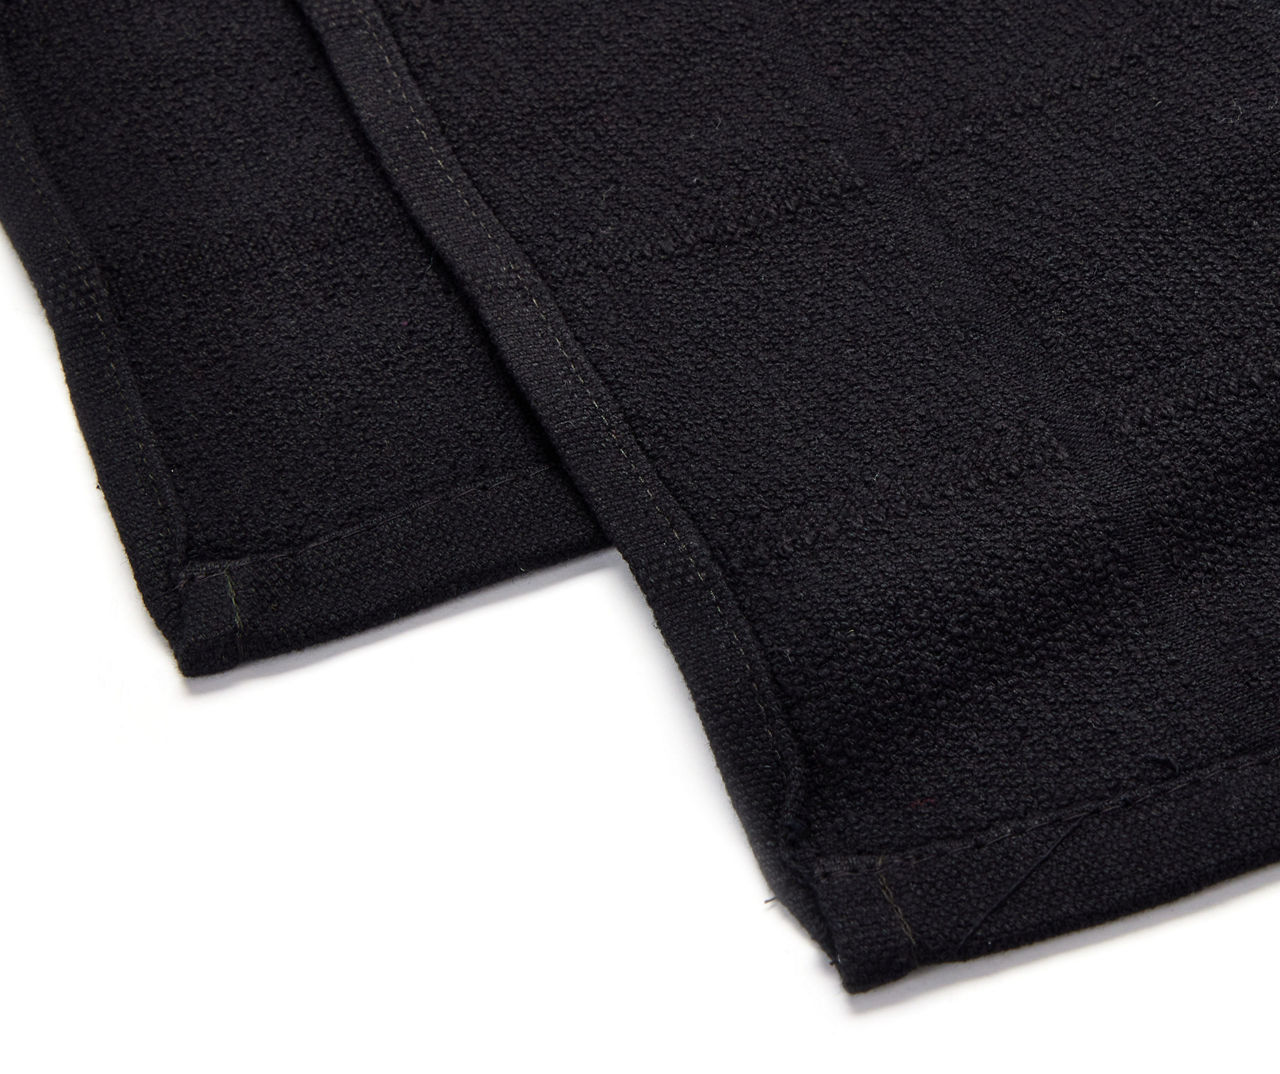 Dark Ivy Grid-Texture Cotton Kitchen Towels, 2-Pack